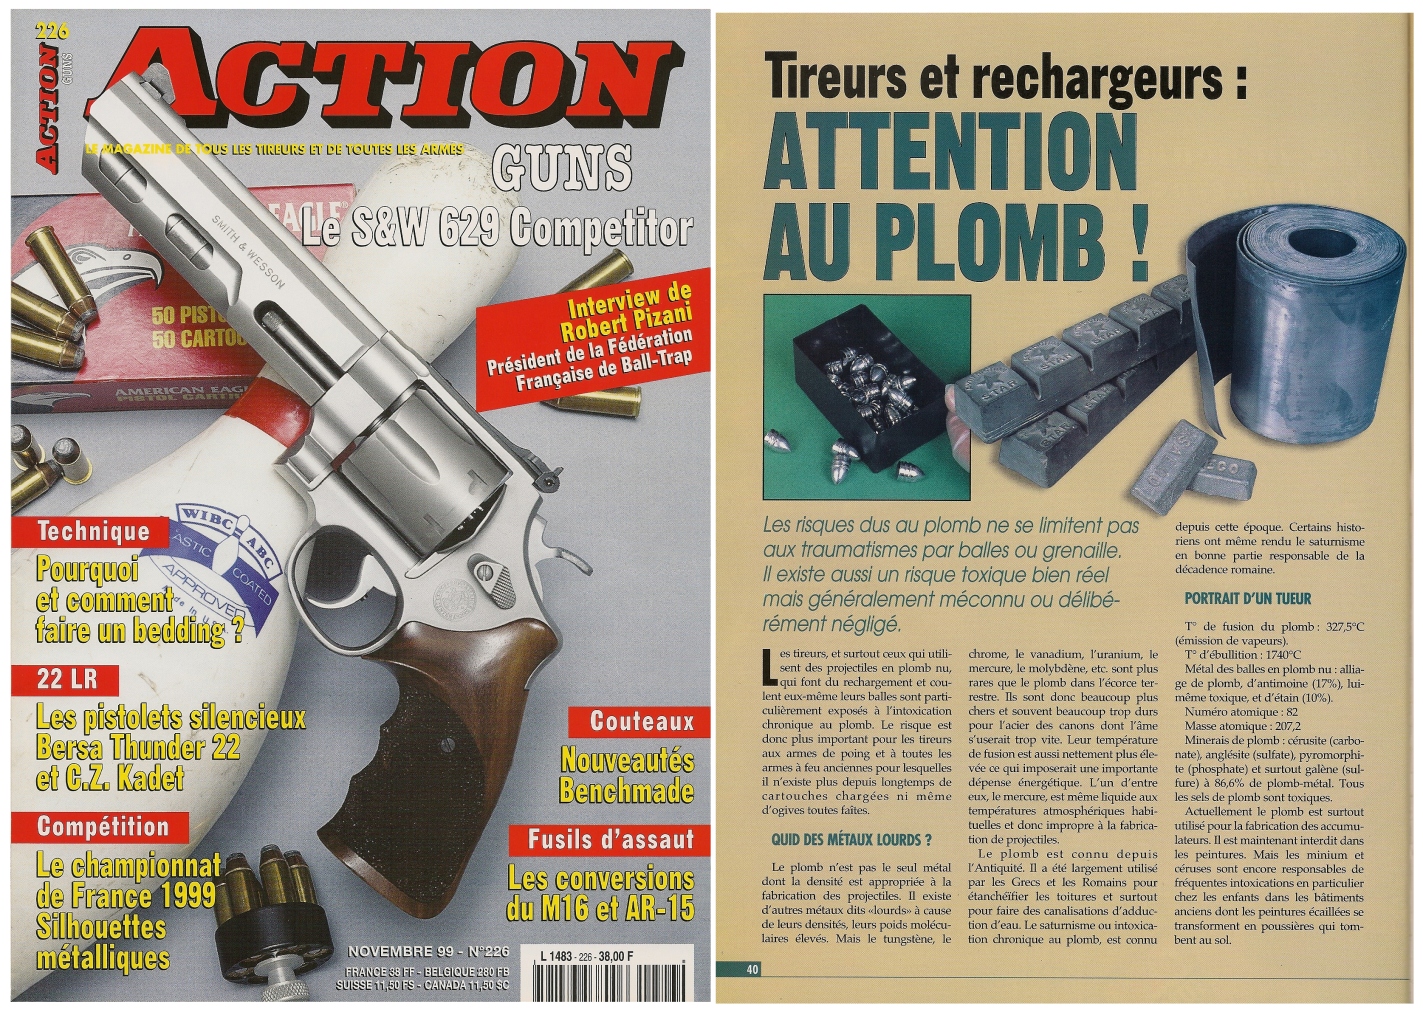 Cet article sur les risques d’intoxication, écrit par le Dr Pierre Corson, a été publié sur 4 pages dans le magazine Action Guns n° 226 (novembre 1999).